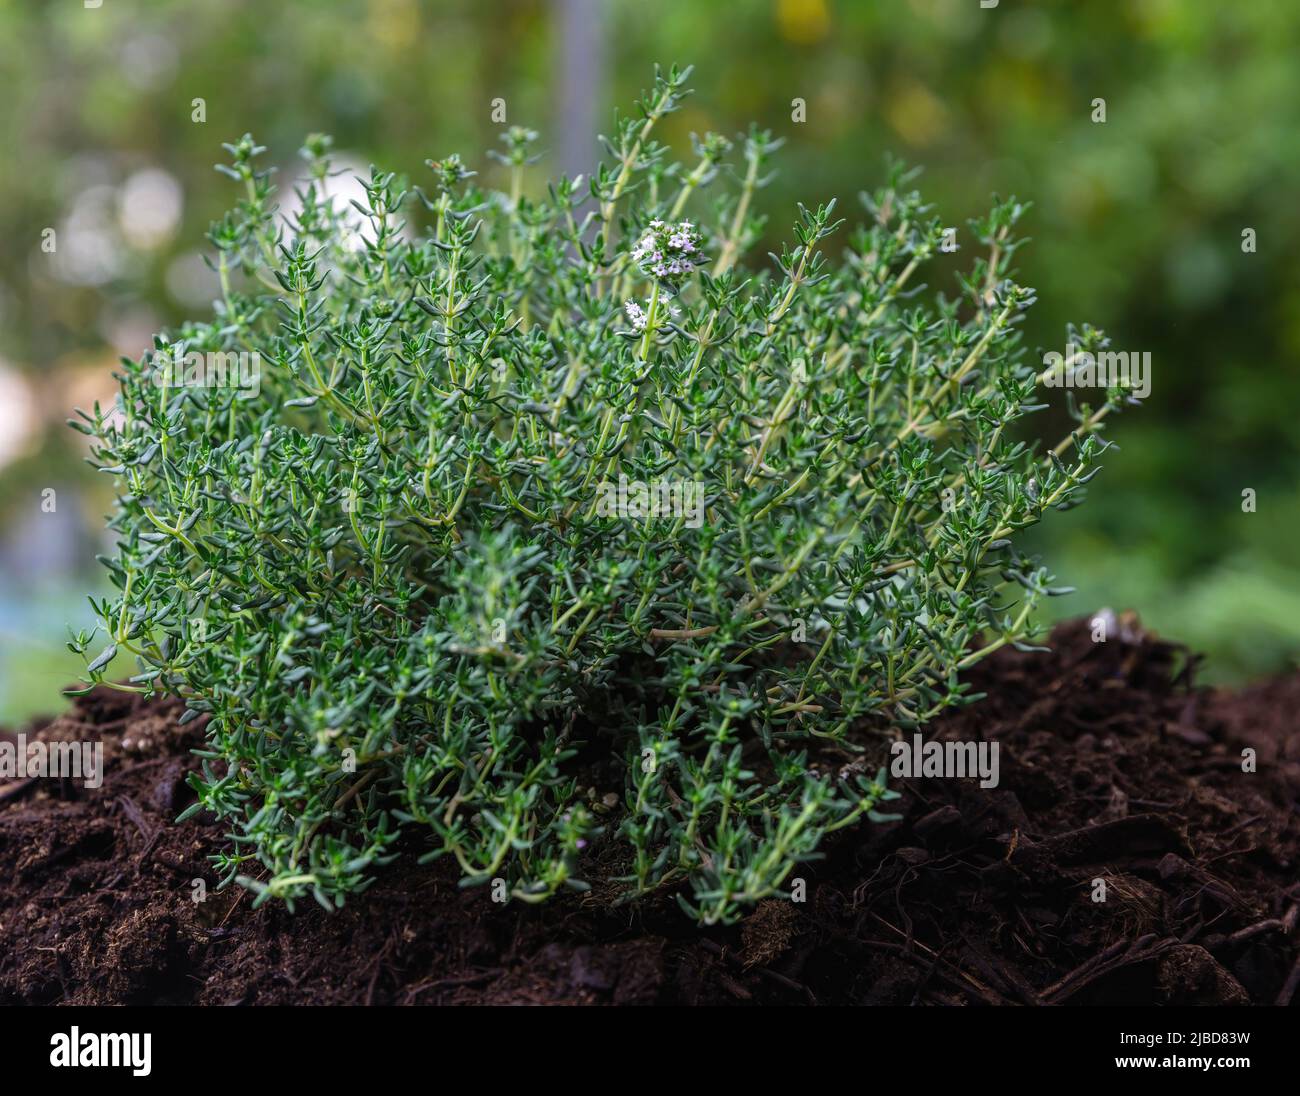 Thym ou thym à usage culinaire herbe. Plante aromatique fraîche, thérapeutique dans le sol, vue rapprochée. Banque D'Images